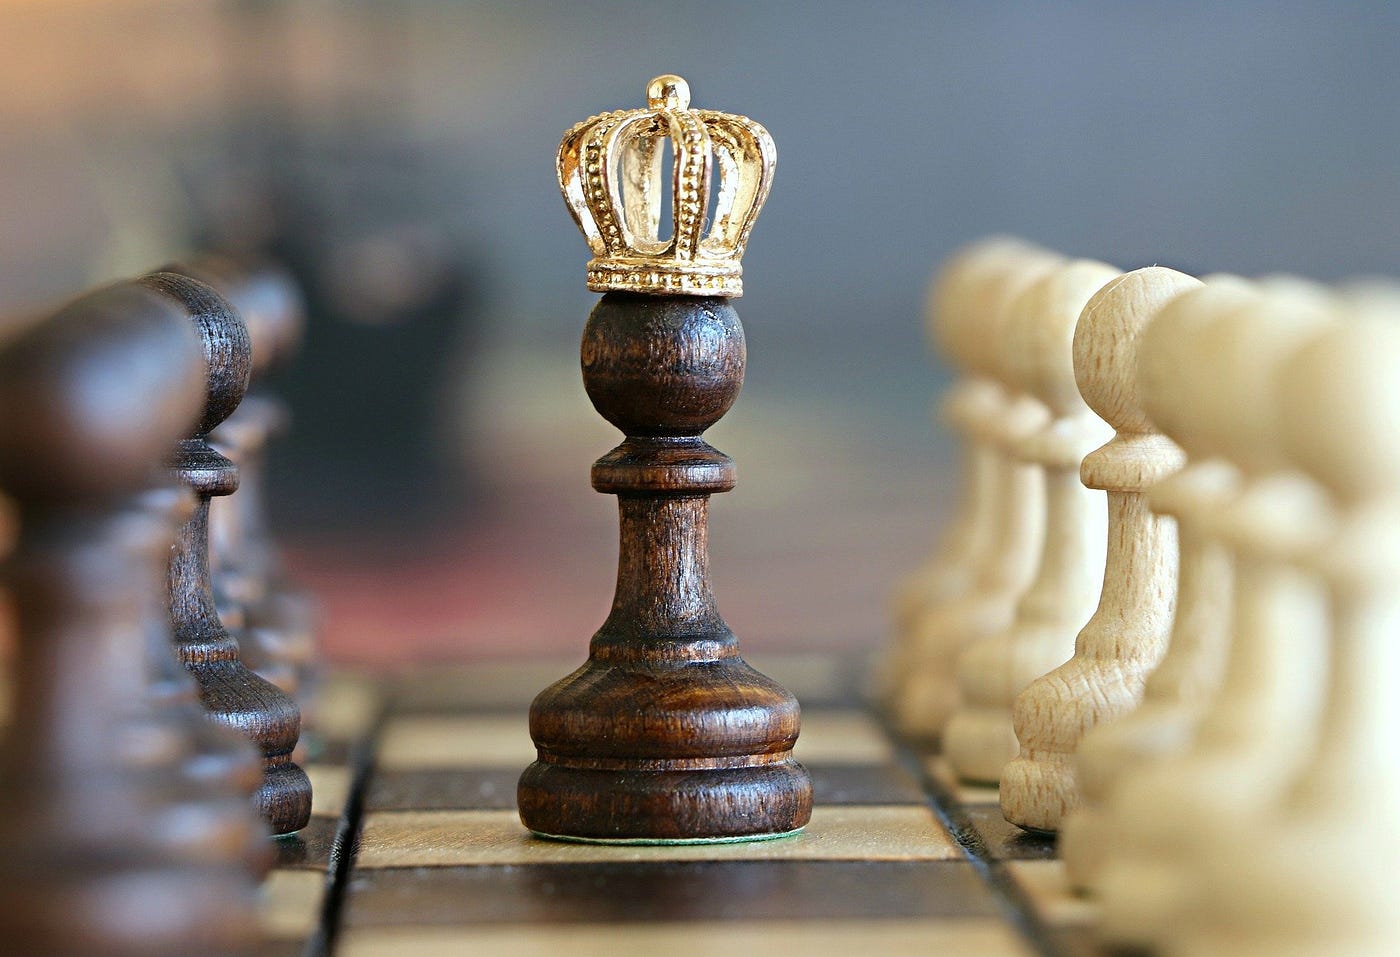 How should I study chess tactics? - Quora